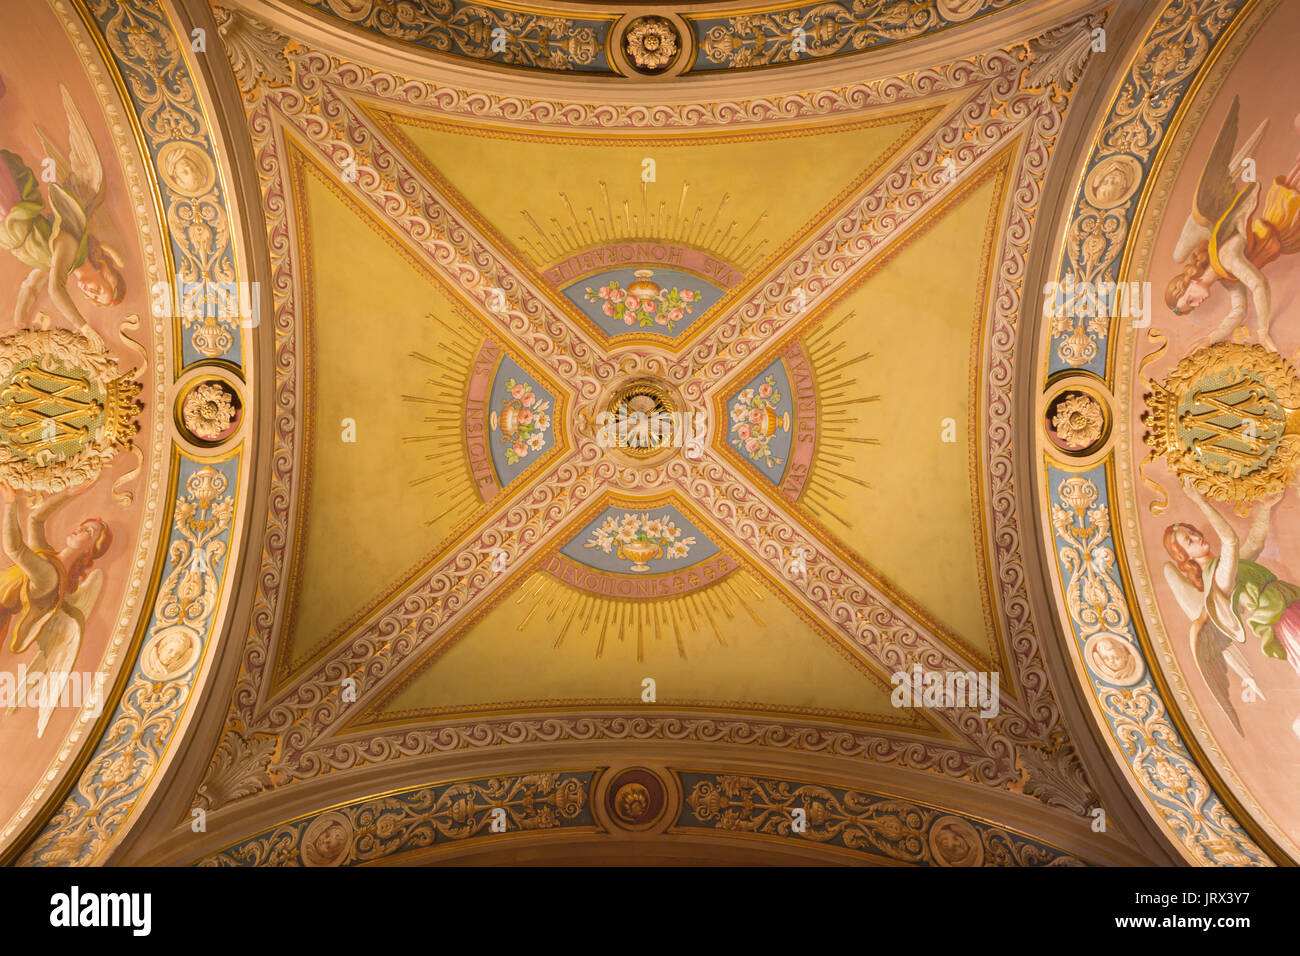 TURIN, Italien - 15. März 2017: Das Detail Fresko an der Decke in der Kirche Basilika Maria Ausiliatrice von unbekannten Künstler des 19. Cent... Stockfoto